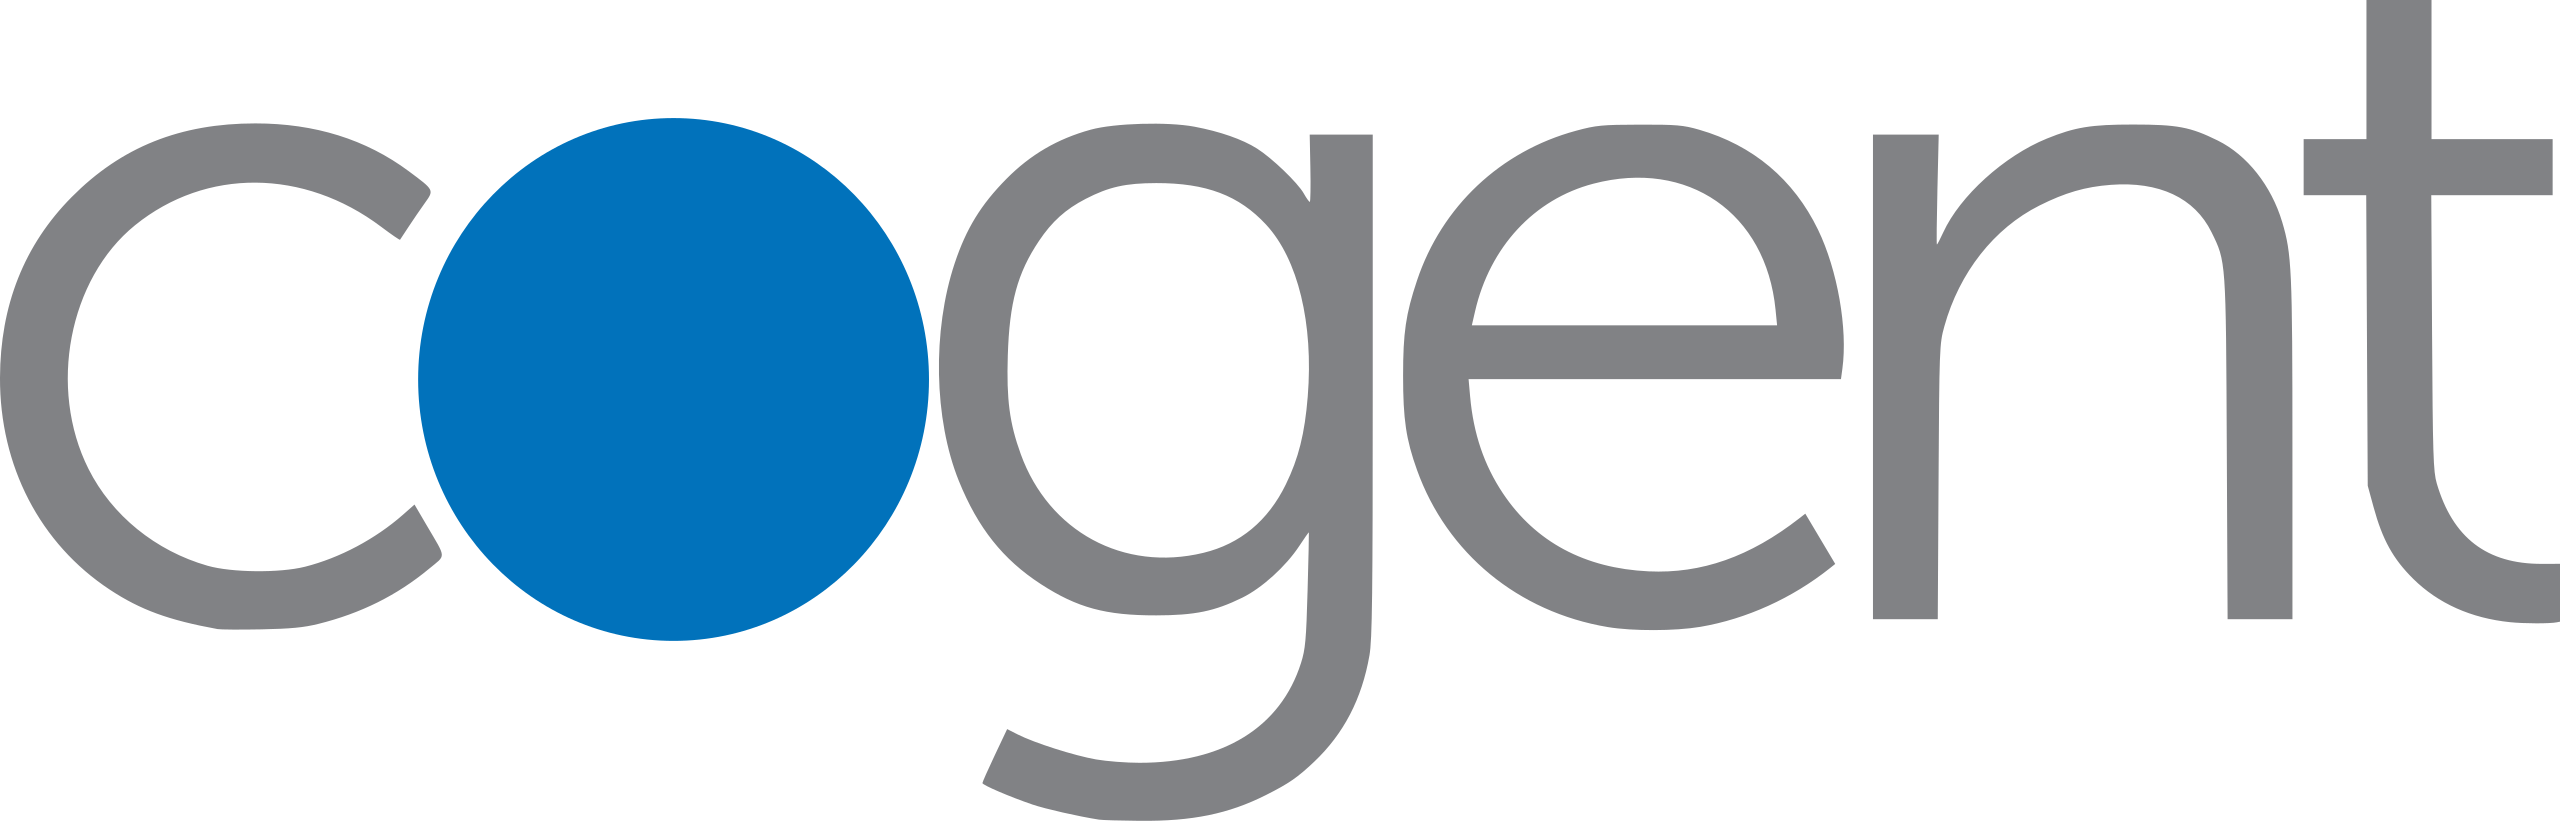 Cogent_Communications_logo